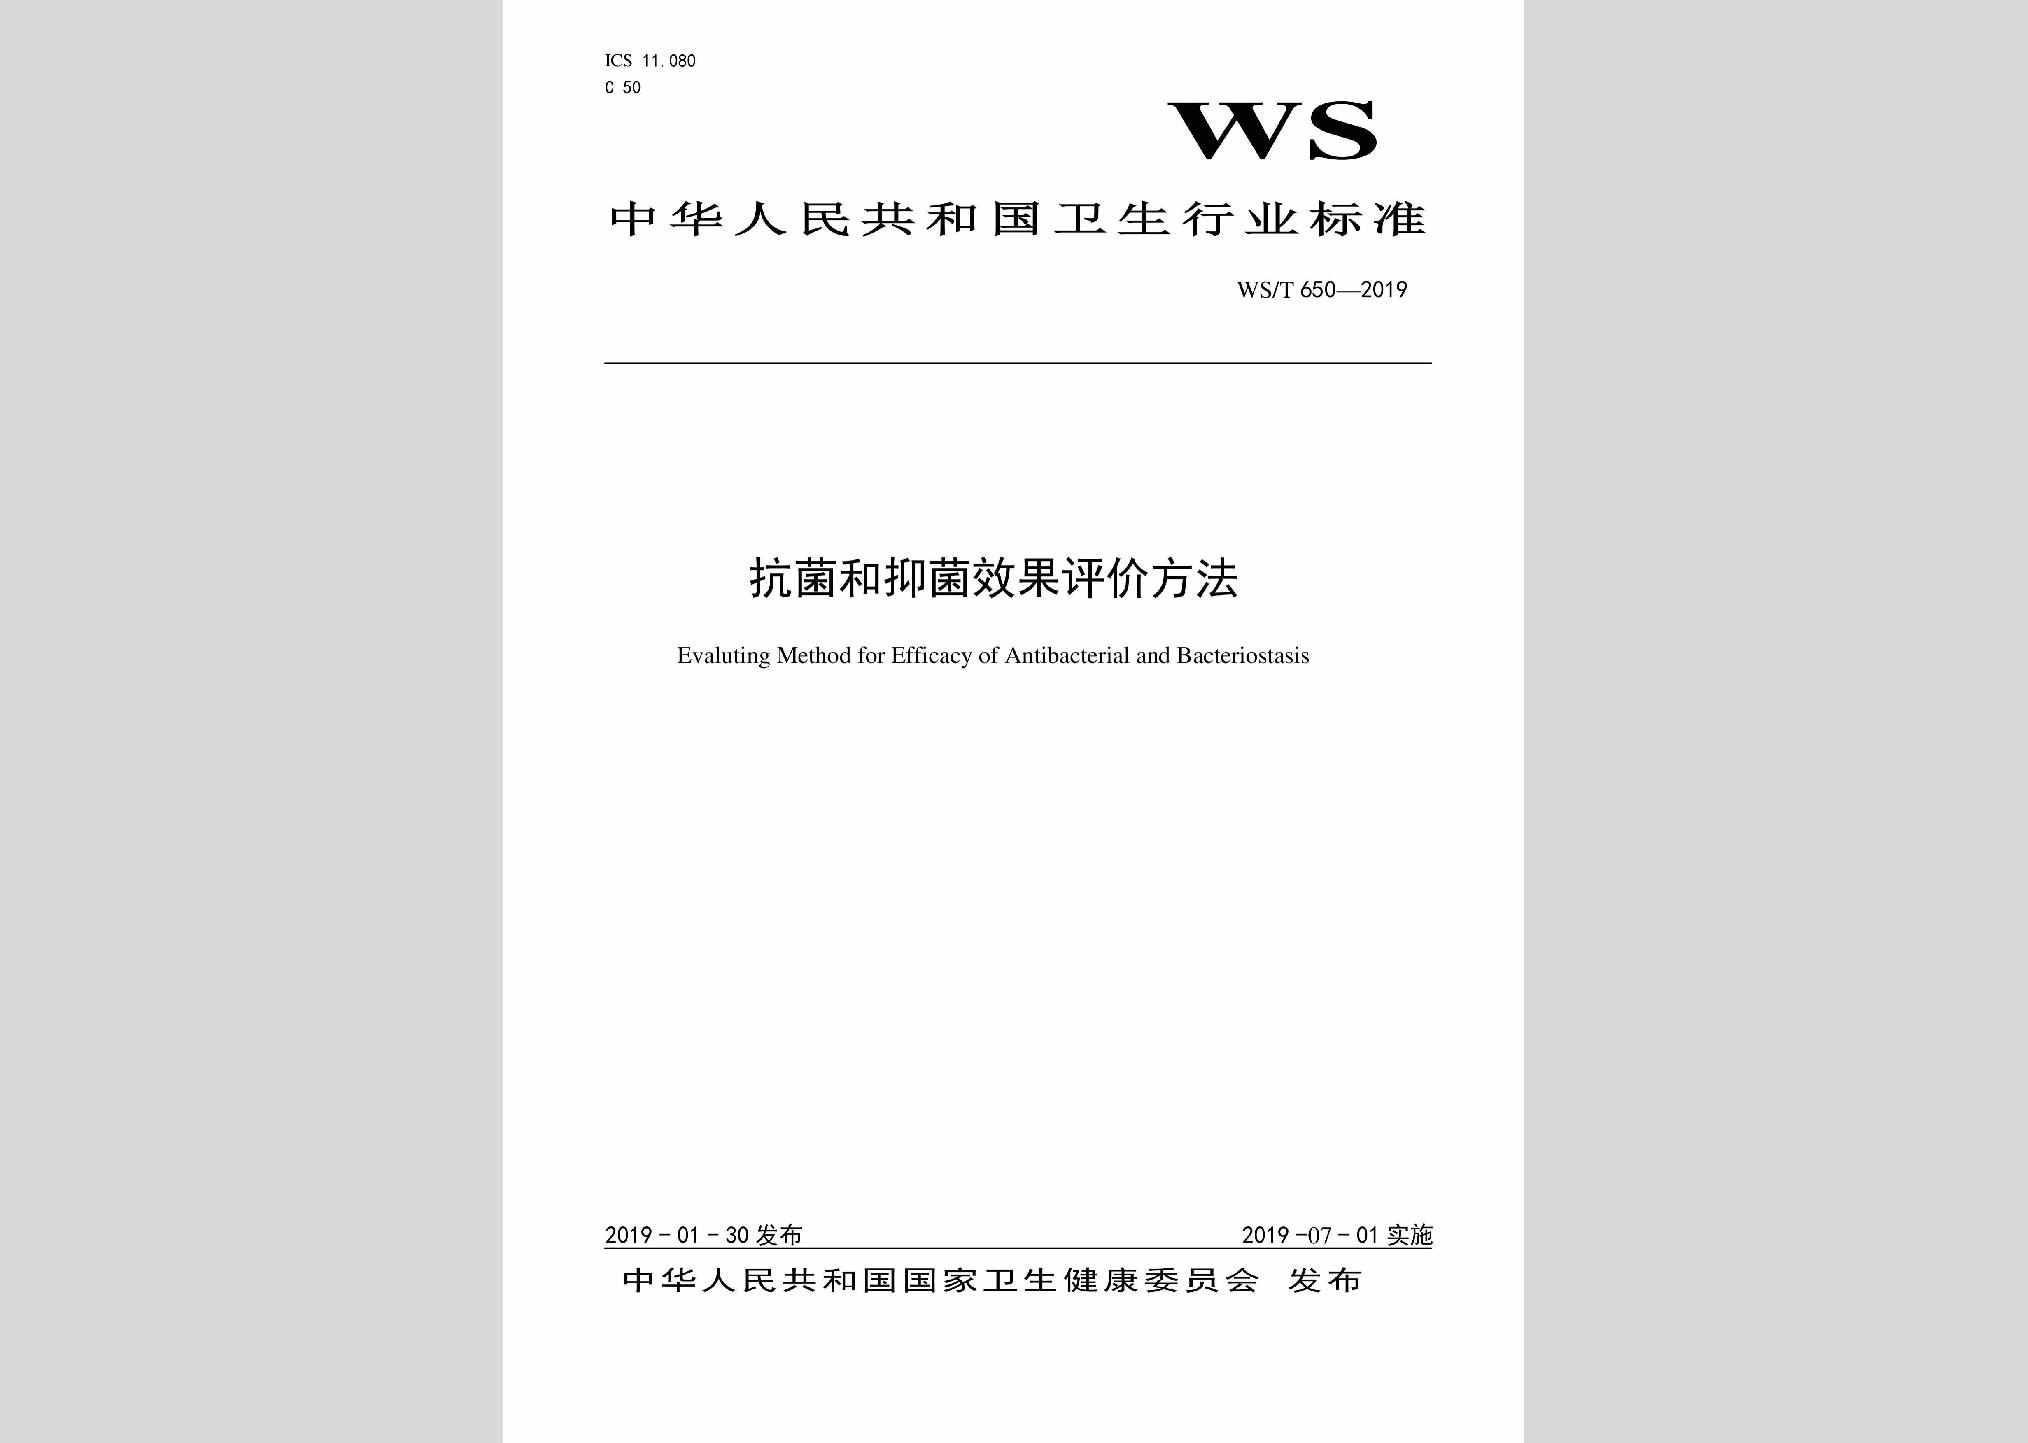 WS/T650-2019：抗菌和抑菌效果评价方法